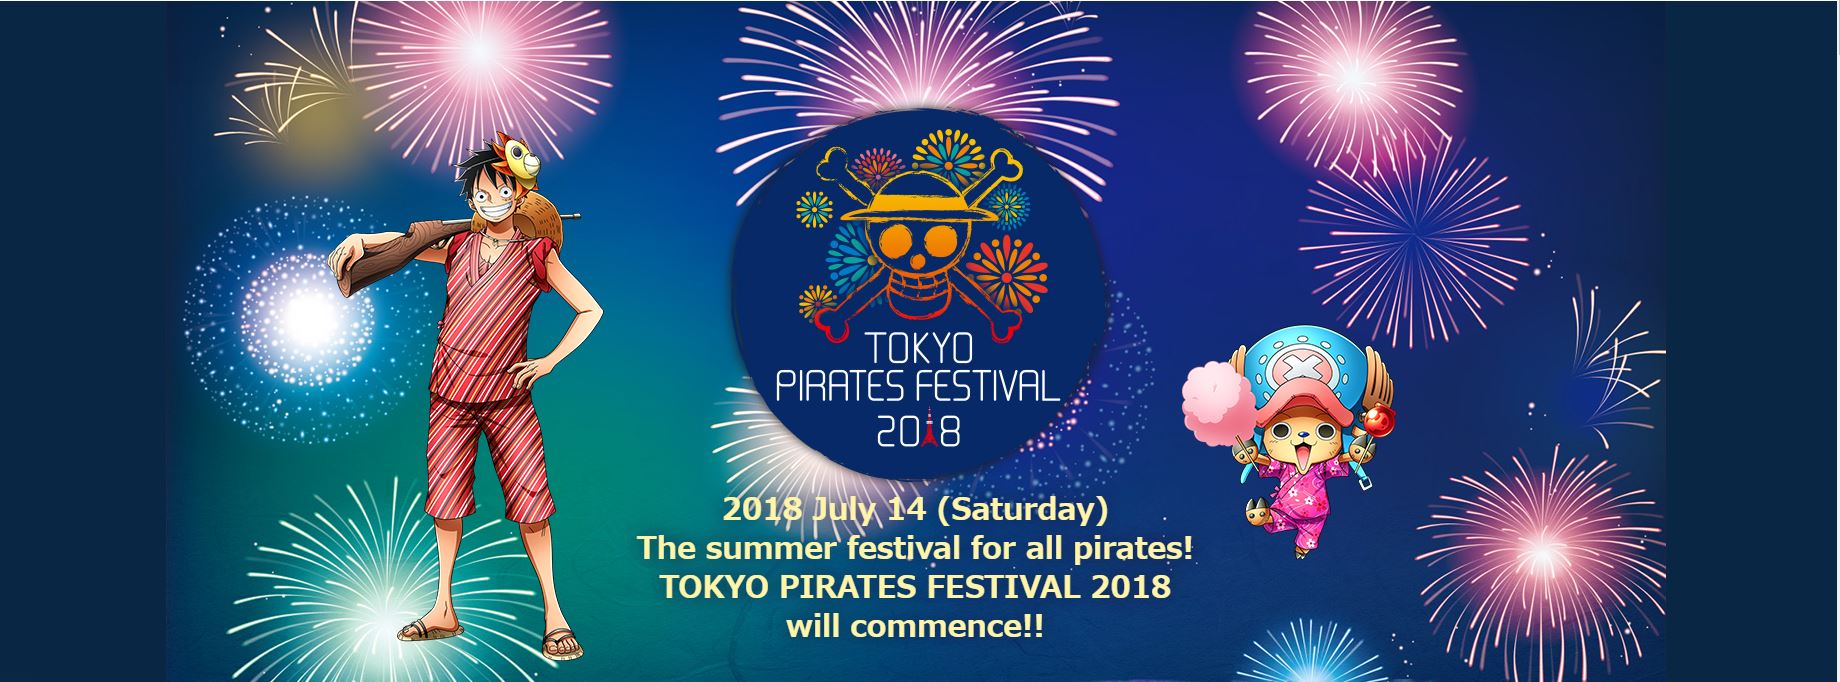 มาฟินกับเทศกาลหน้าร้อนพร้อมเหล่าลูฟี่และเพื่อนพ้องในงาน “TOKYO PIRATES FESTIVAL 2018”